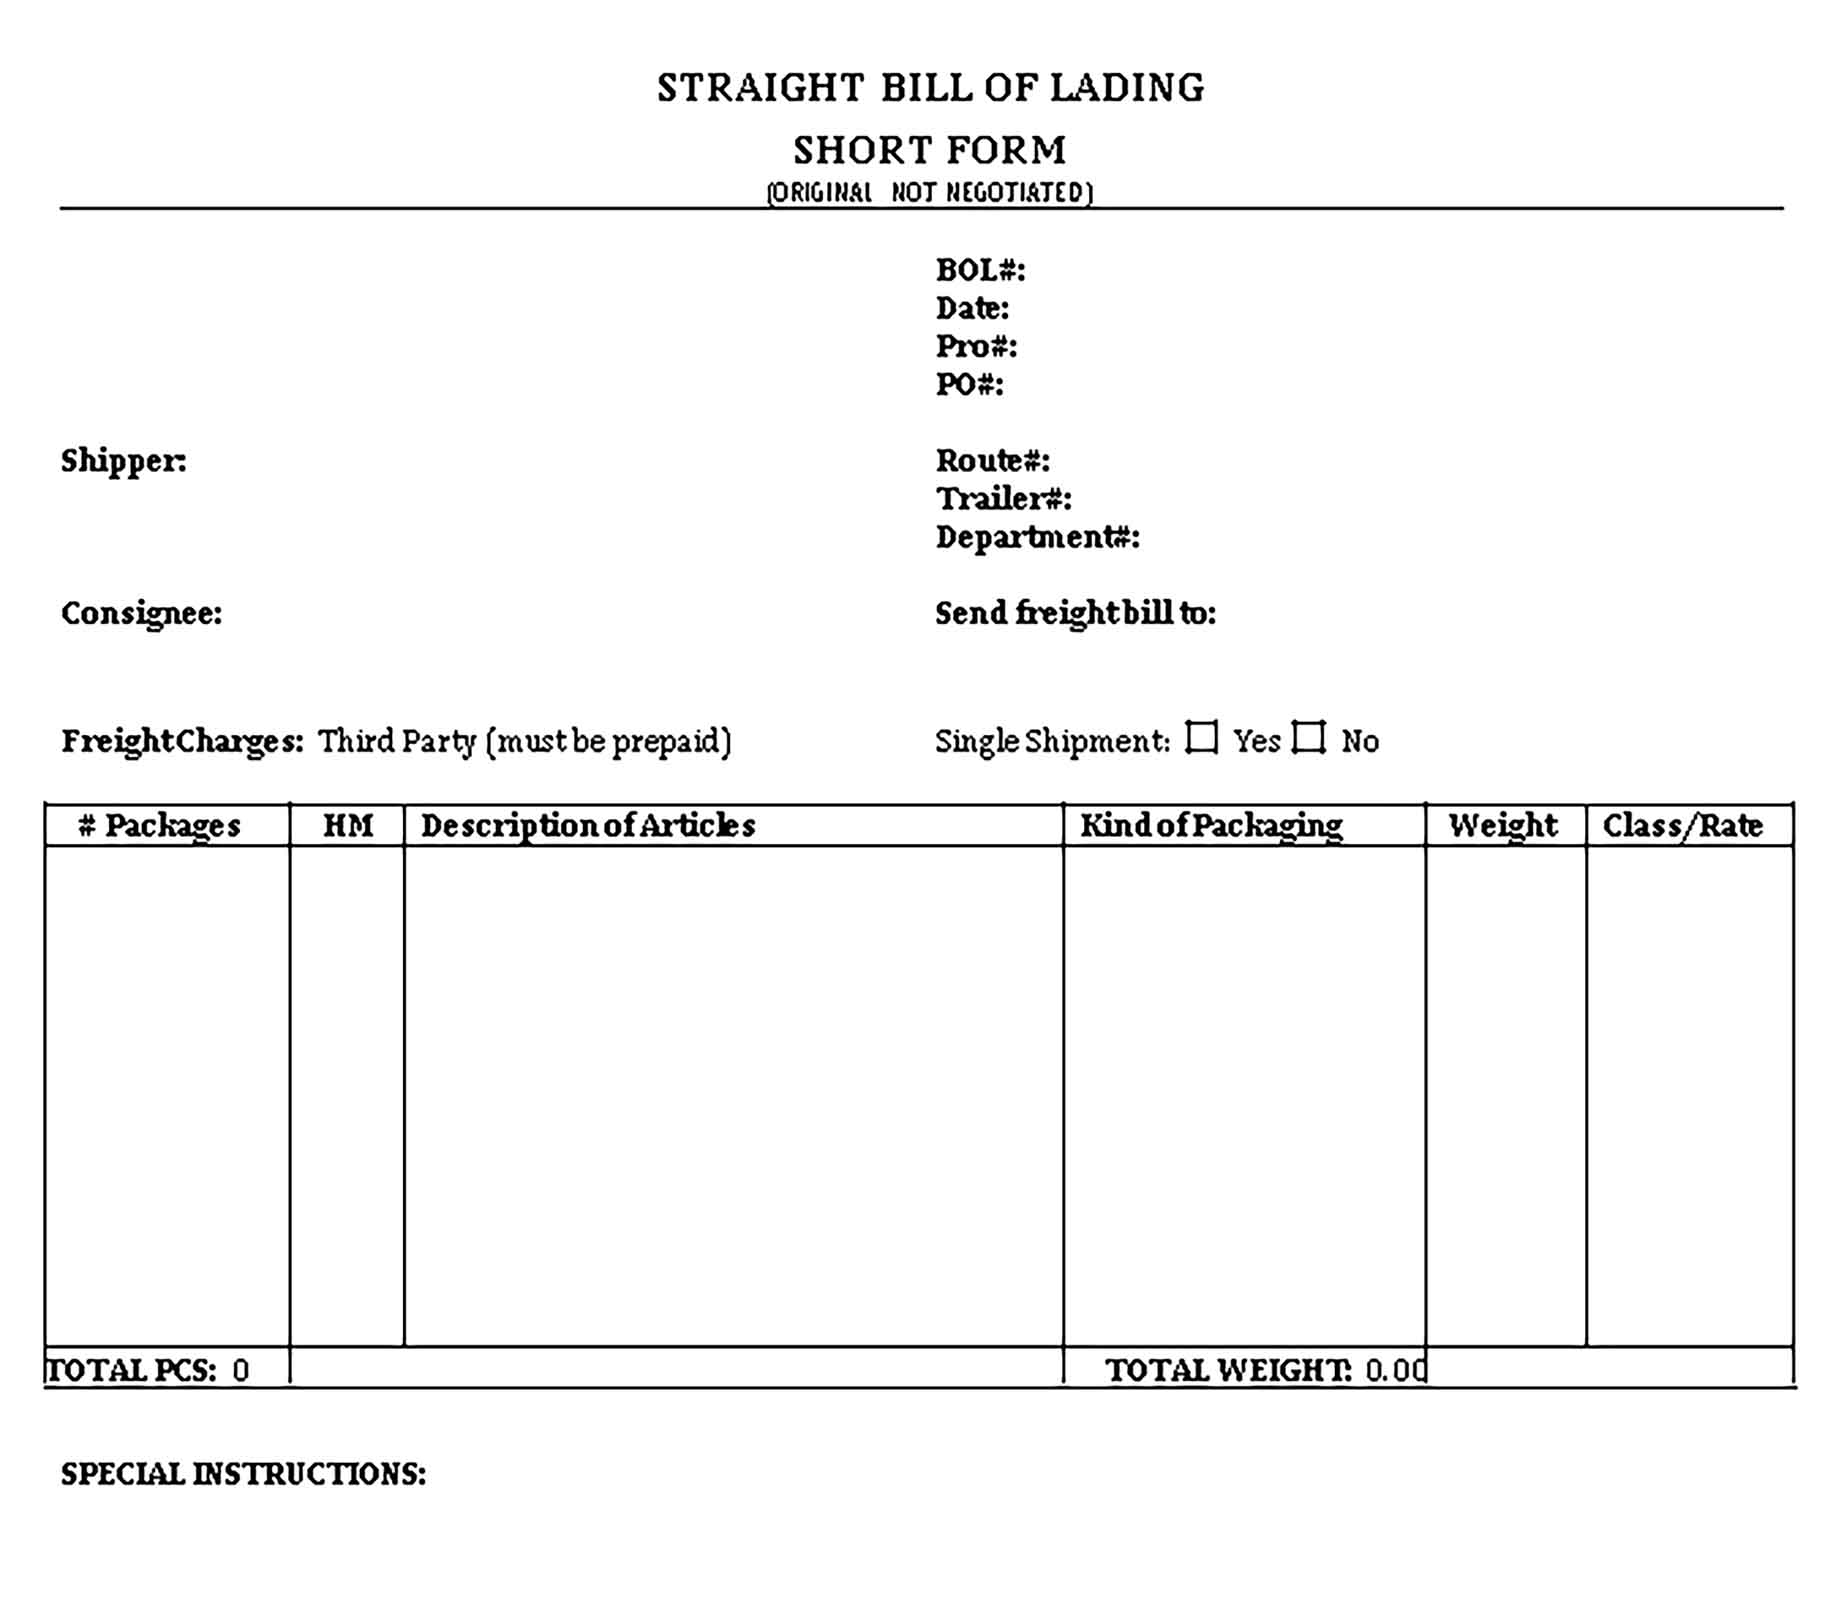 Sample Straight Bill of Lading Short Form from Drake Transportation Templates 1